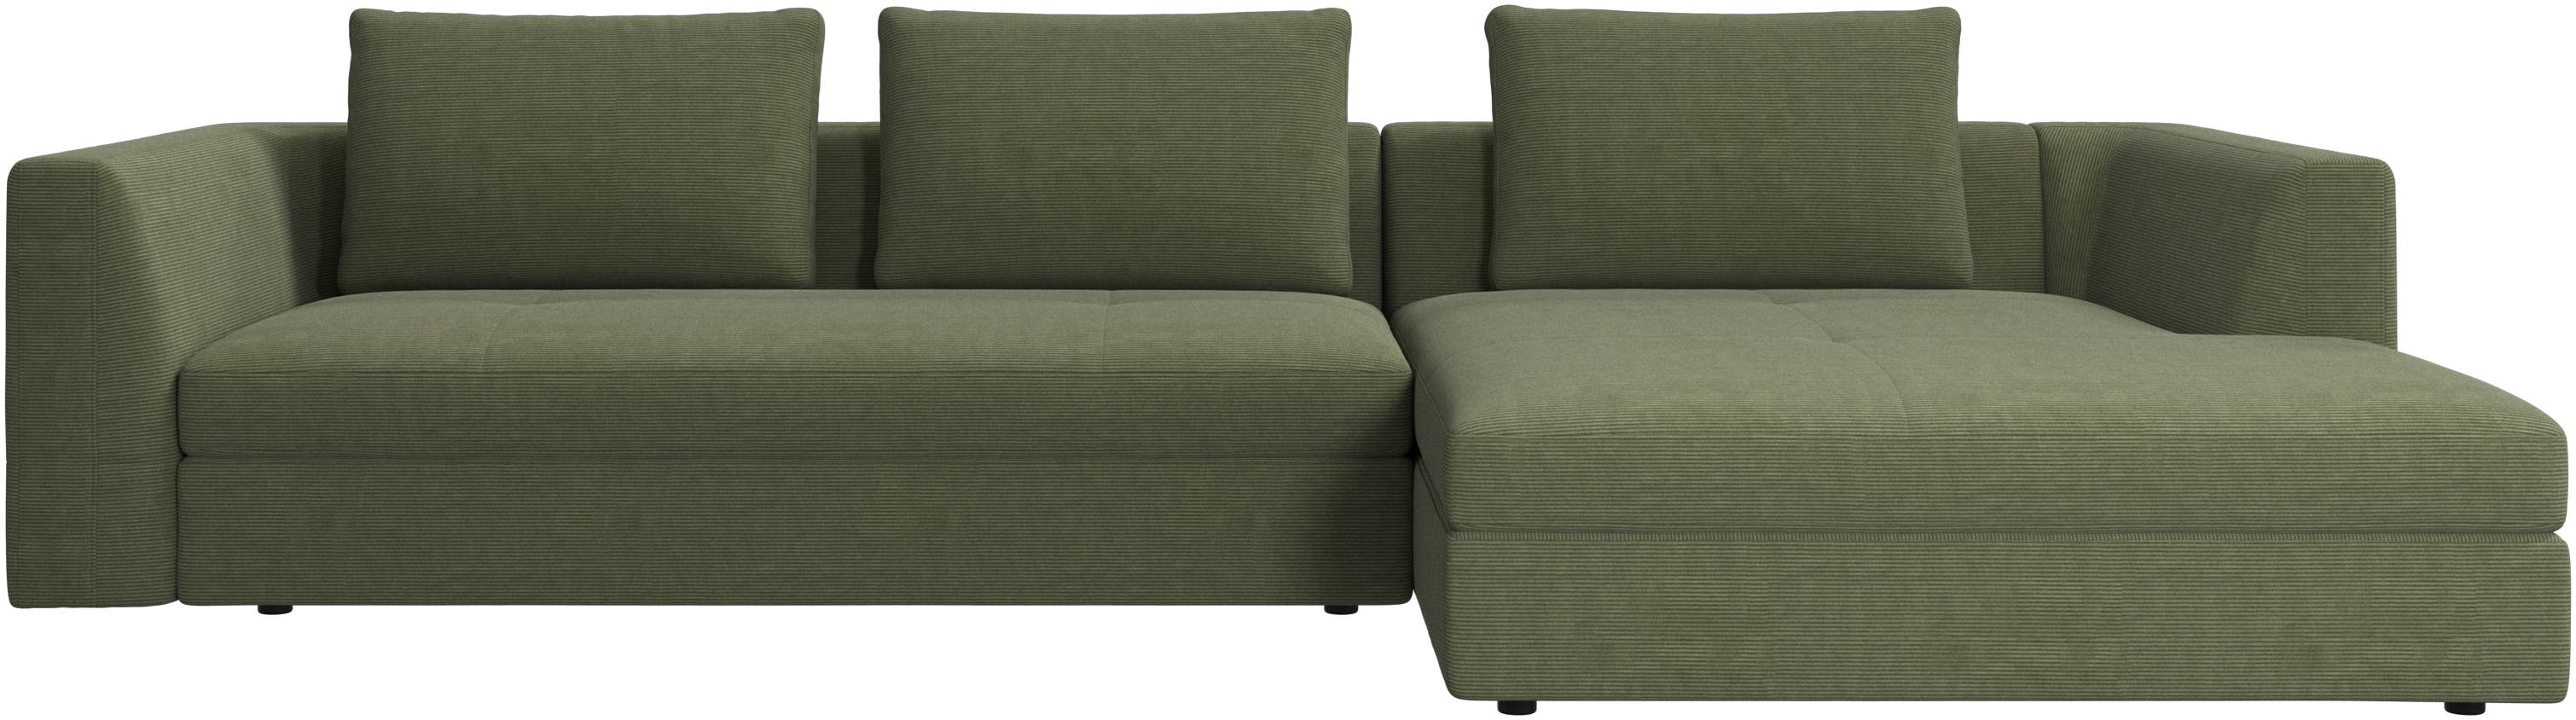 Bergamo sofa with resting unit